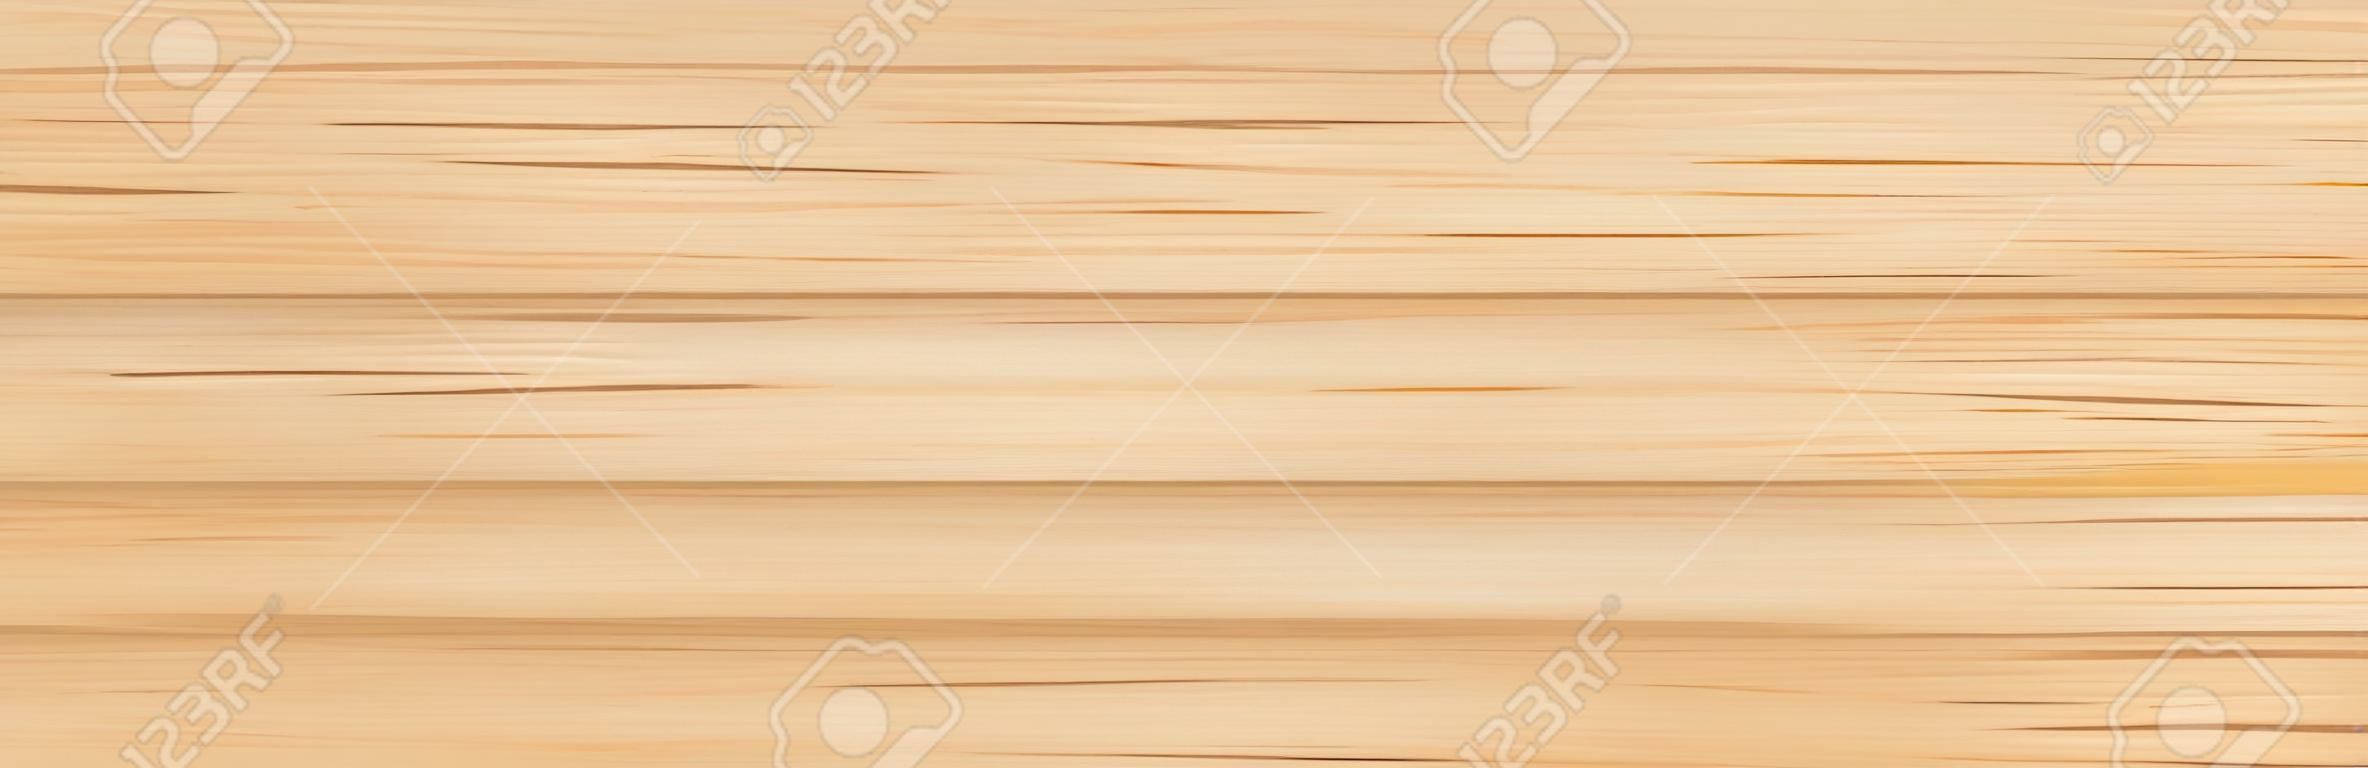 padrão de painel de madeira com belo resumo